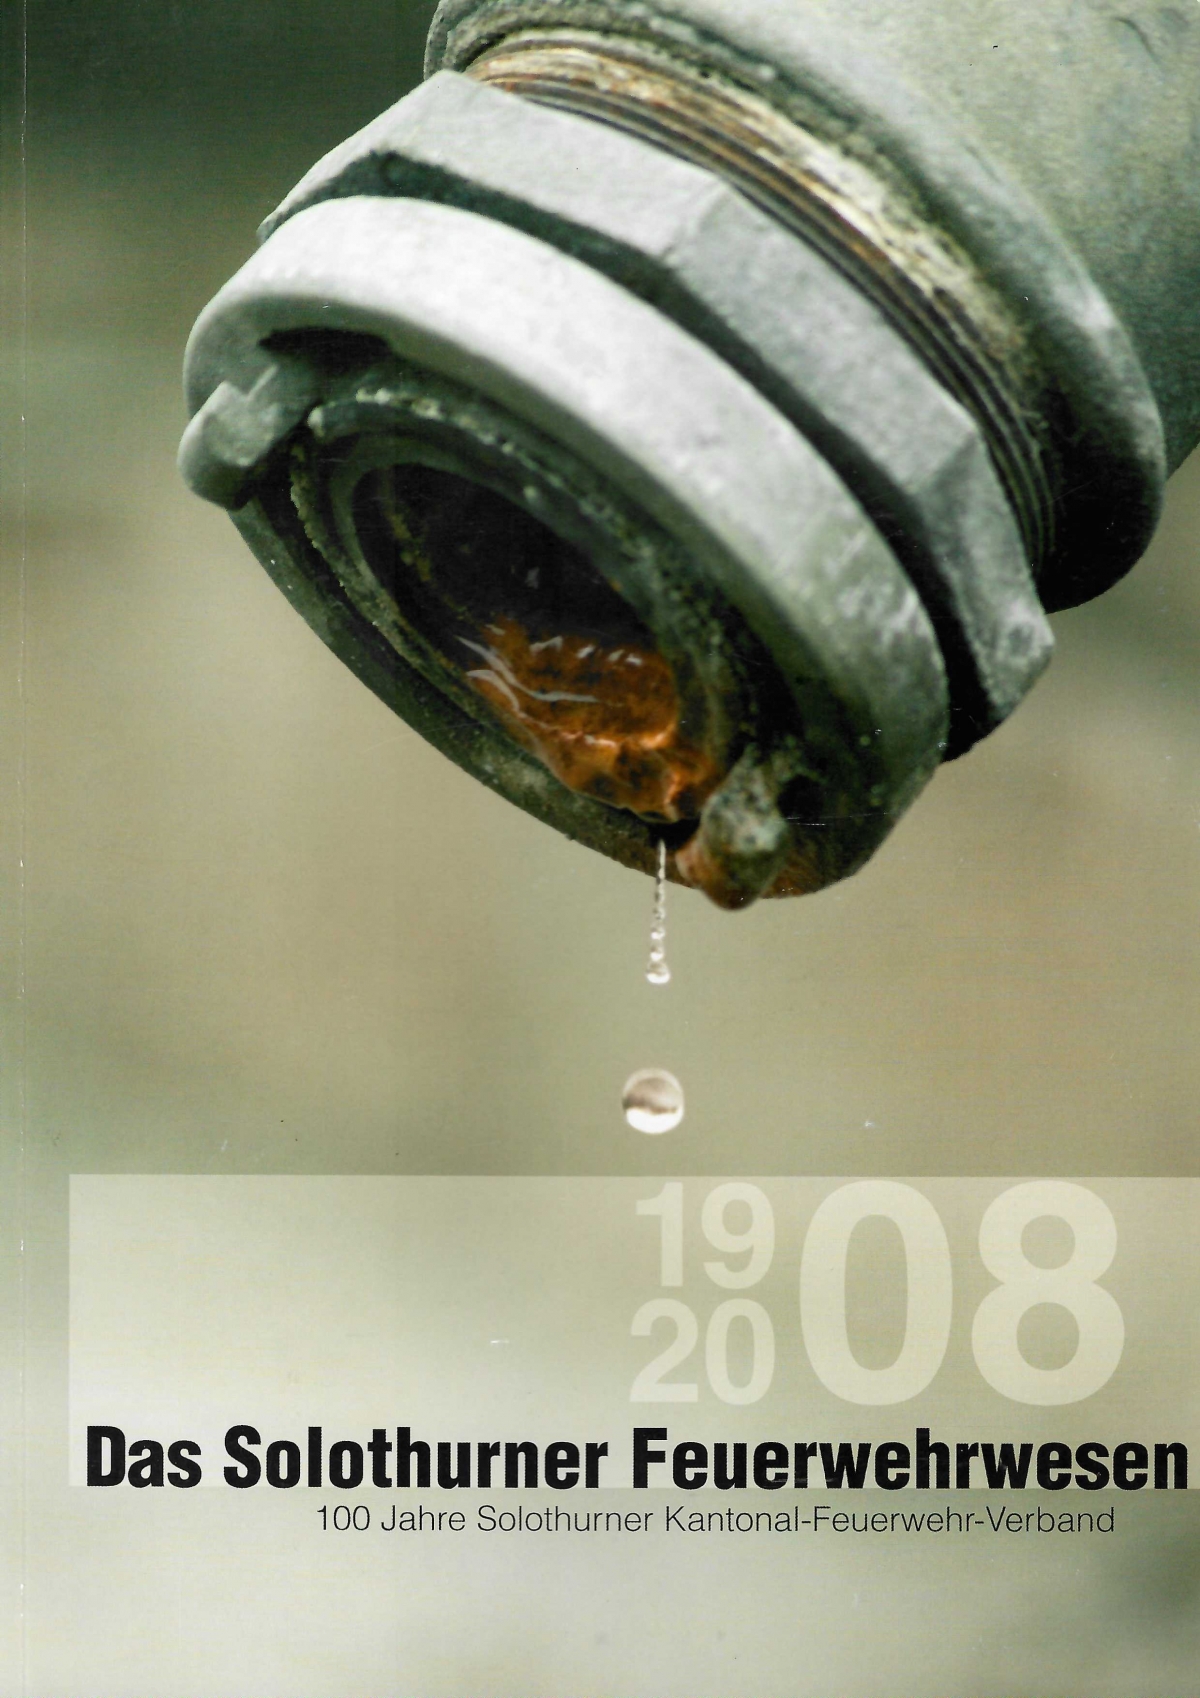 <p>Das Solothurner Feuerwehrwesen 1908-2008, 100 jahre Solothurner Kantonal-Feuerwehrverband, Buch guter Zustand</p>